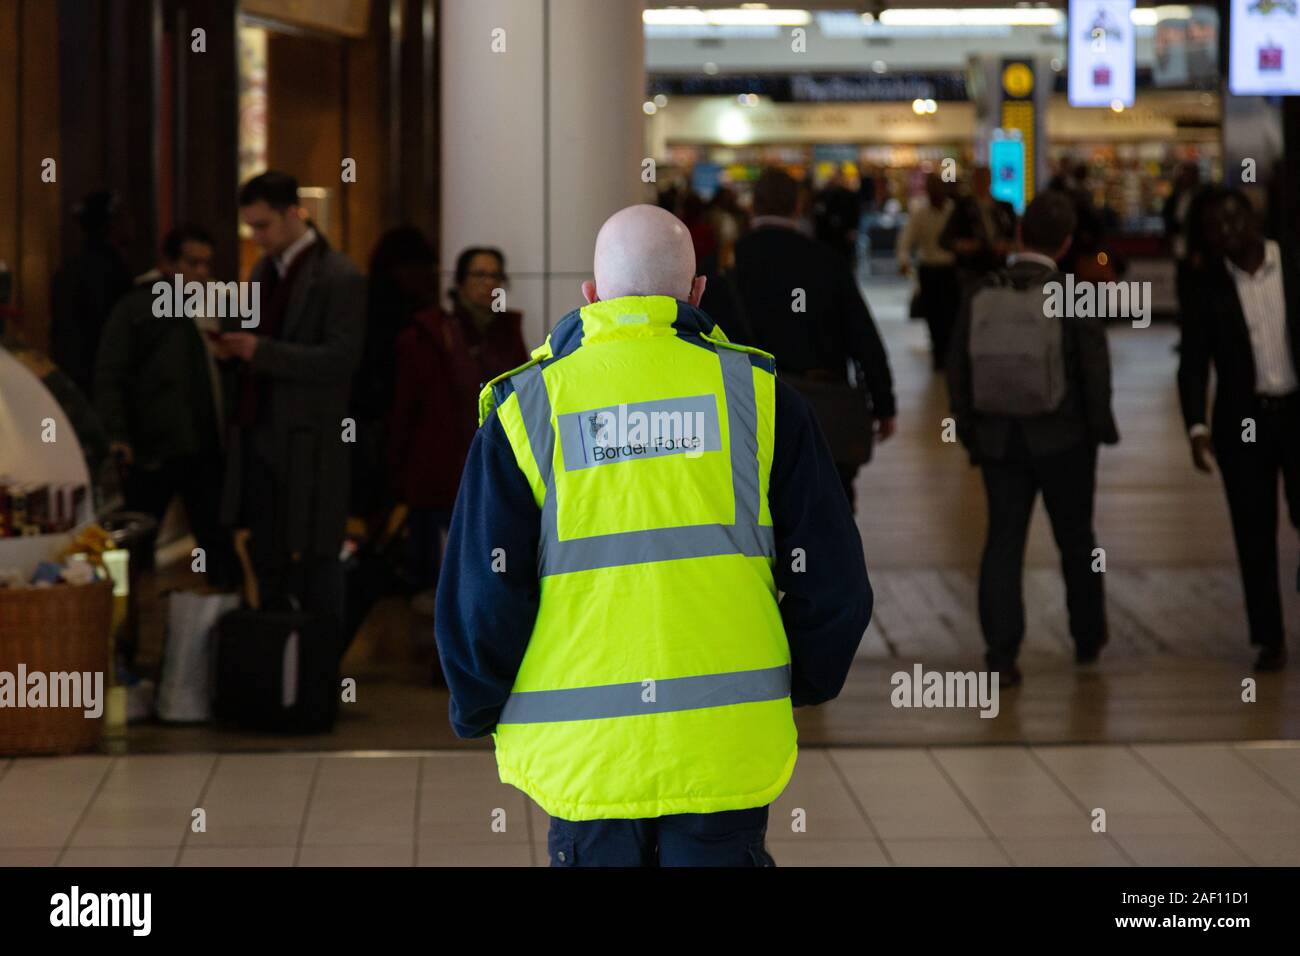 Agent de contrôle des frontières du Royaume-Uni ; personnel de la Force frontalière du Royaume-Uni travaillant au T3, à l'aéroport de Heathrow, vue arrière, à l'aéroport de Londres, au Royaume-Uni. Travailleur britannique. Banque D'Images